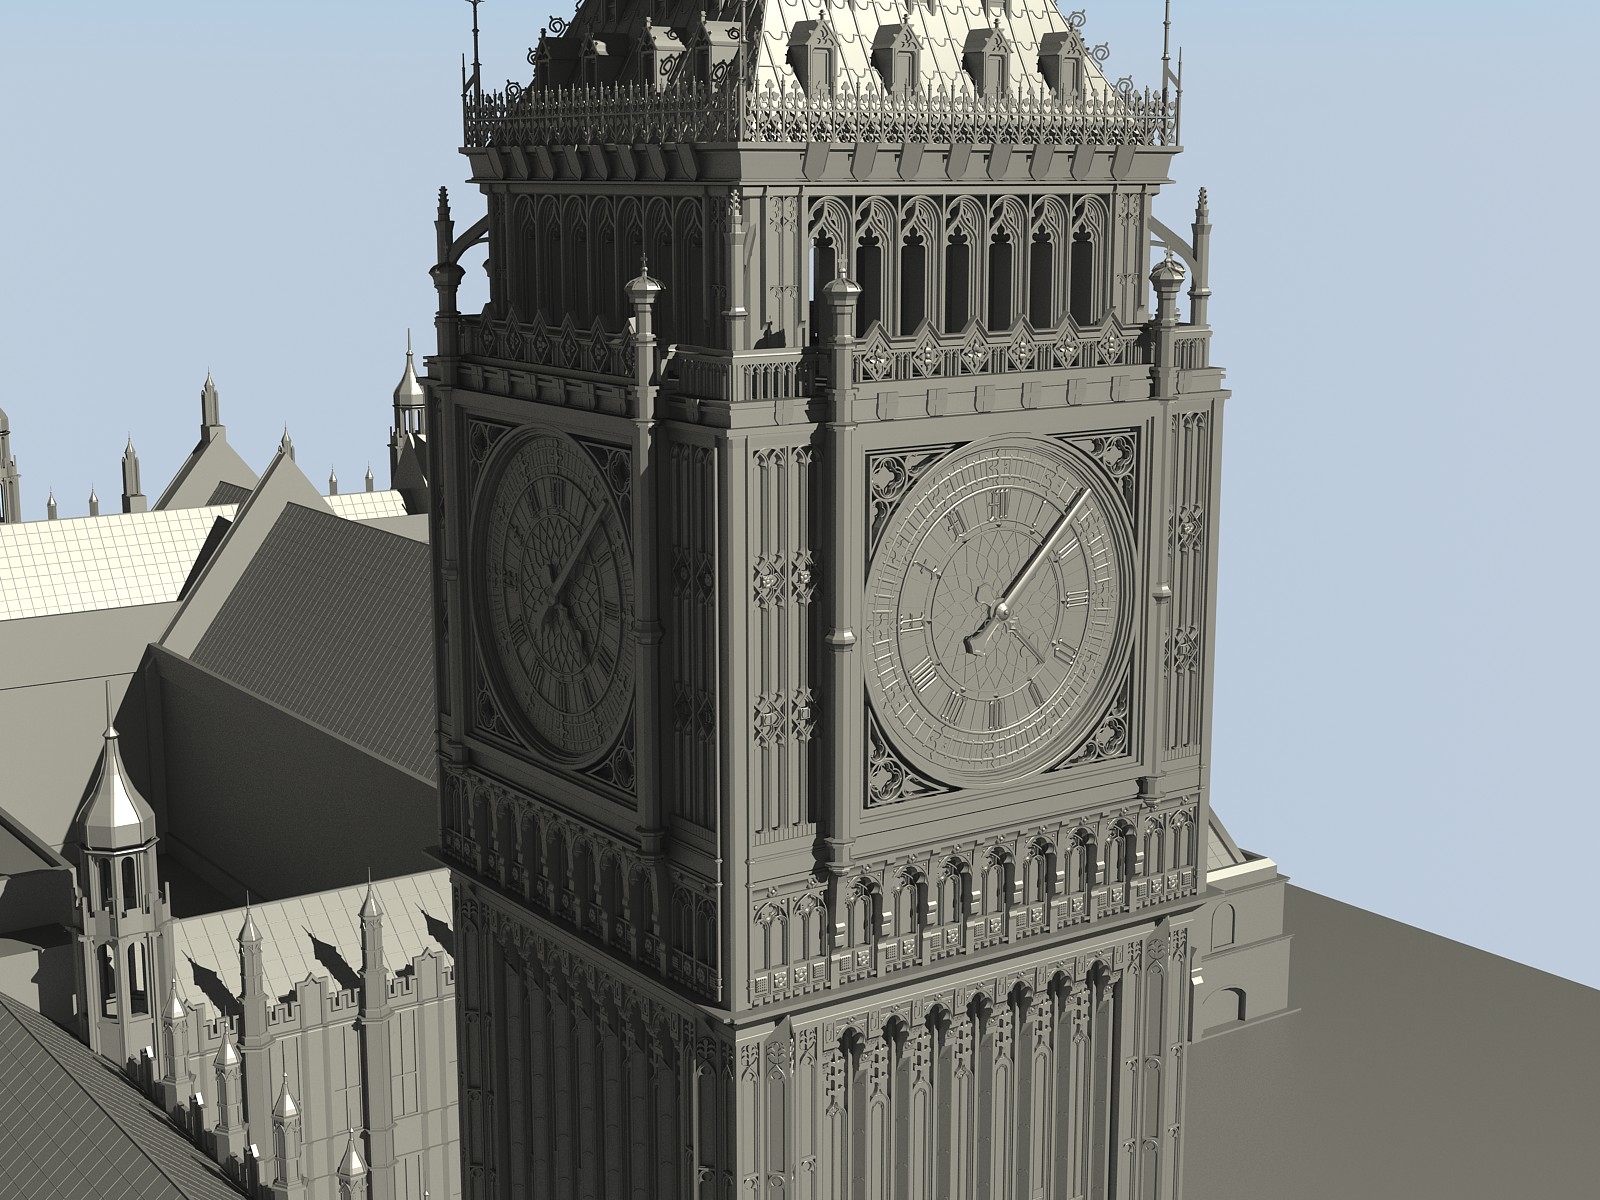 London Big Ben 3d Model